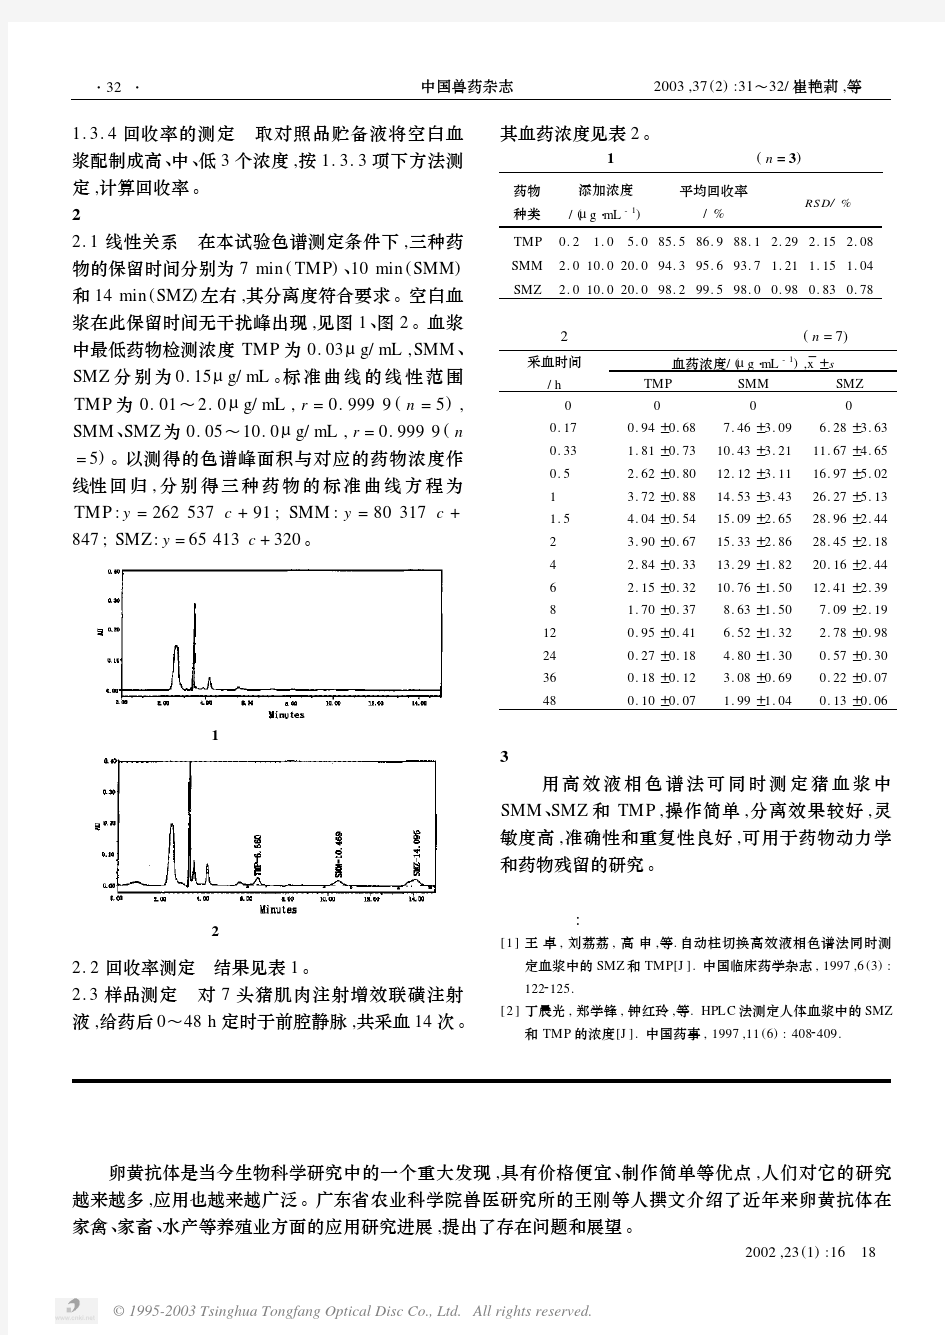 高效液相色谱法同时测定猪血浆中的SMM、SMZ和TMP